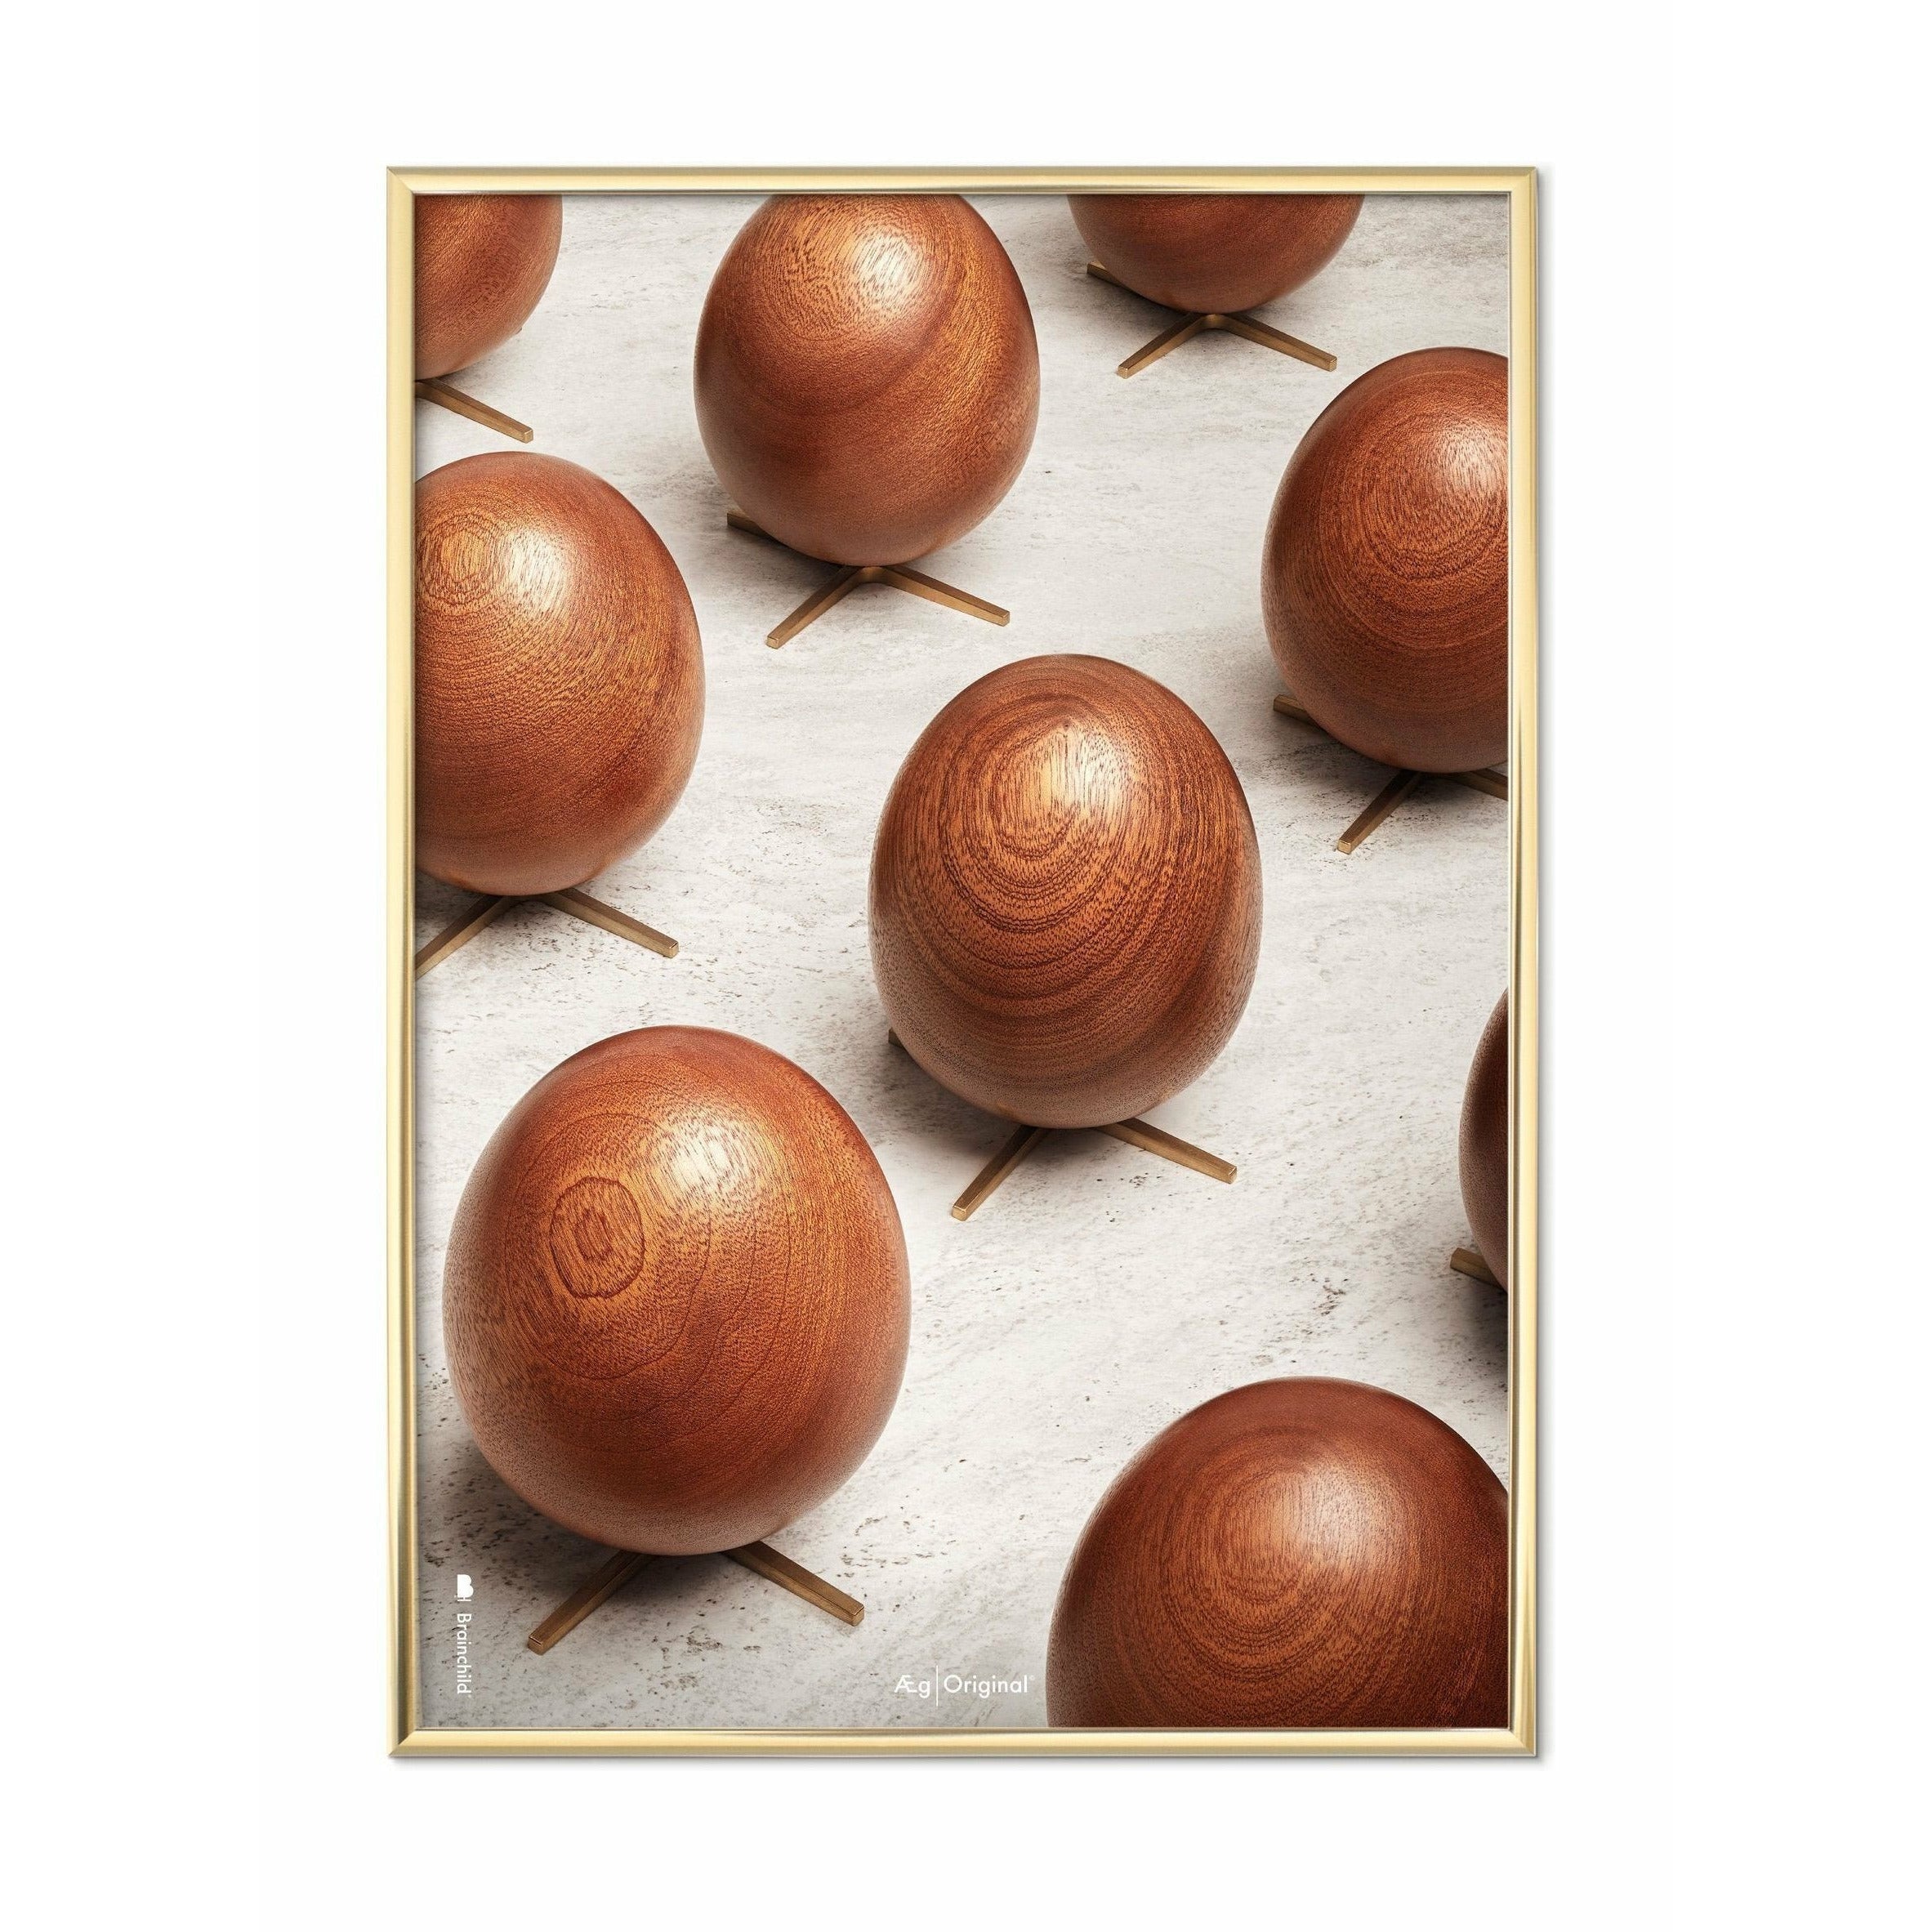 Poster per sfilata di uova di prima cosa, cornice color ottone, 30 x40 cm